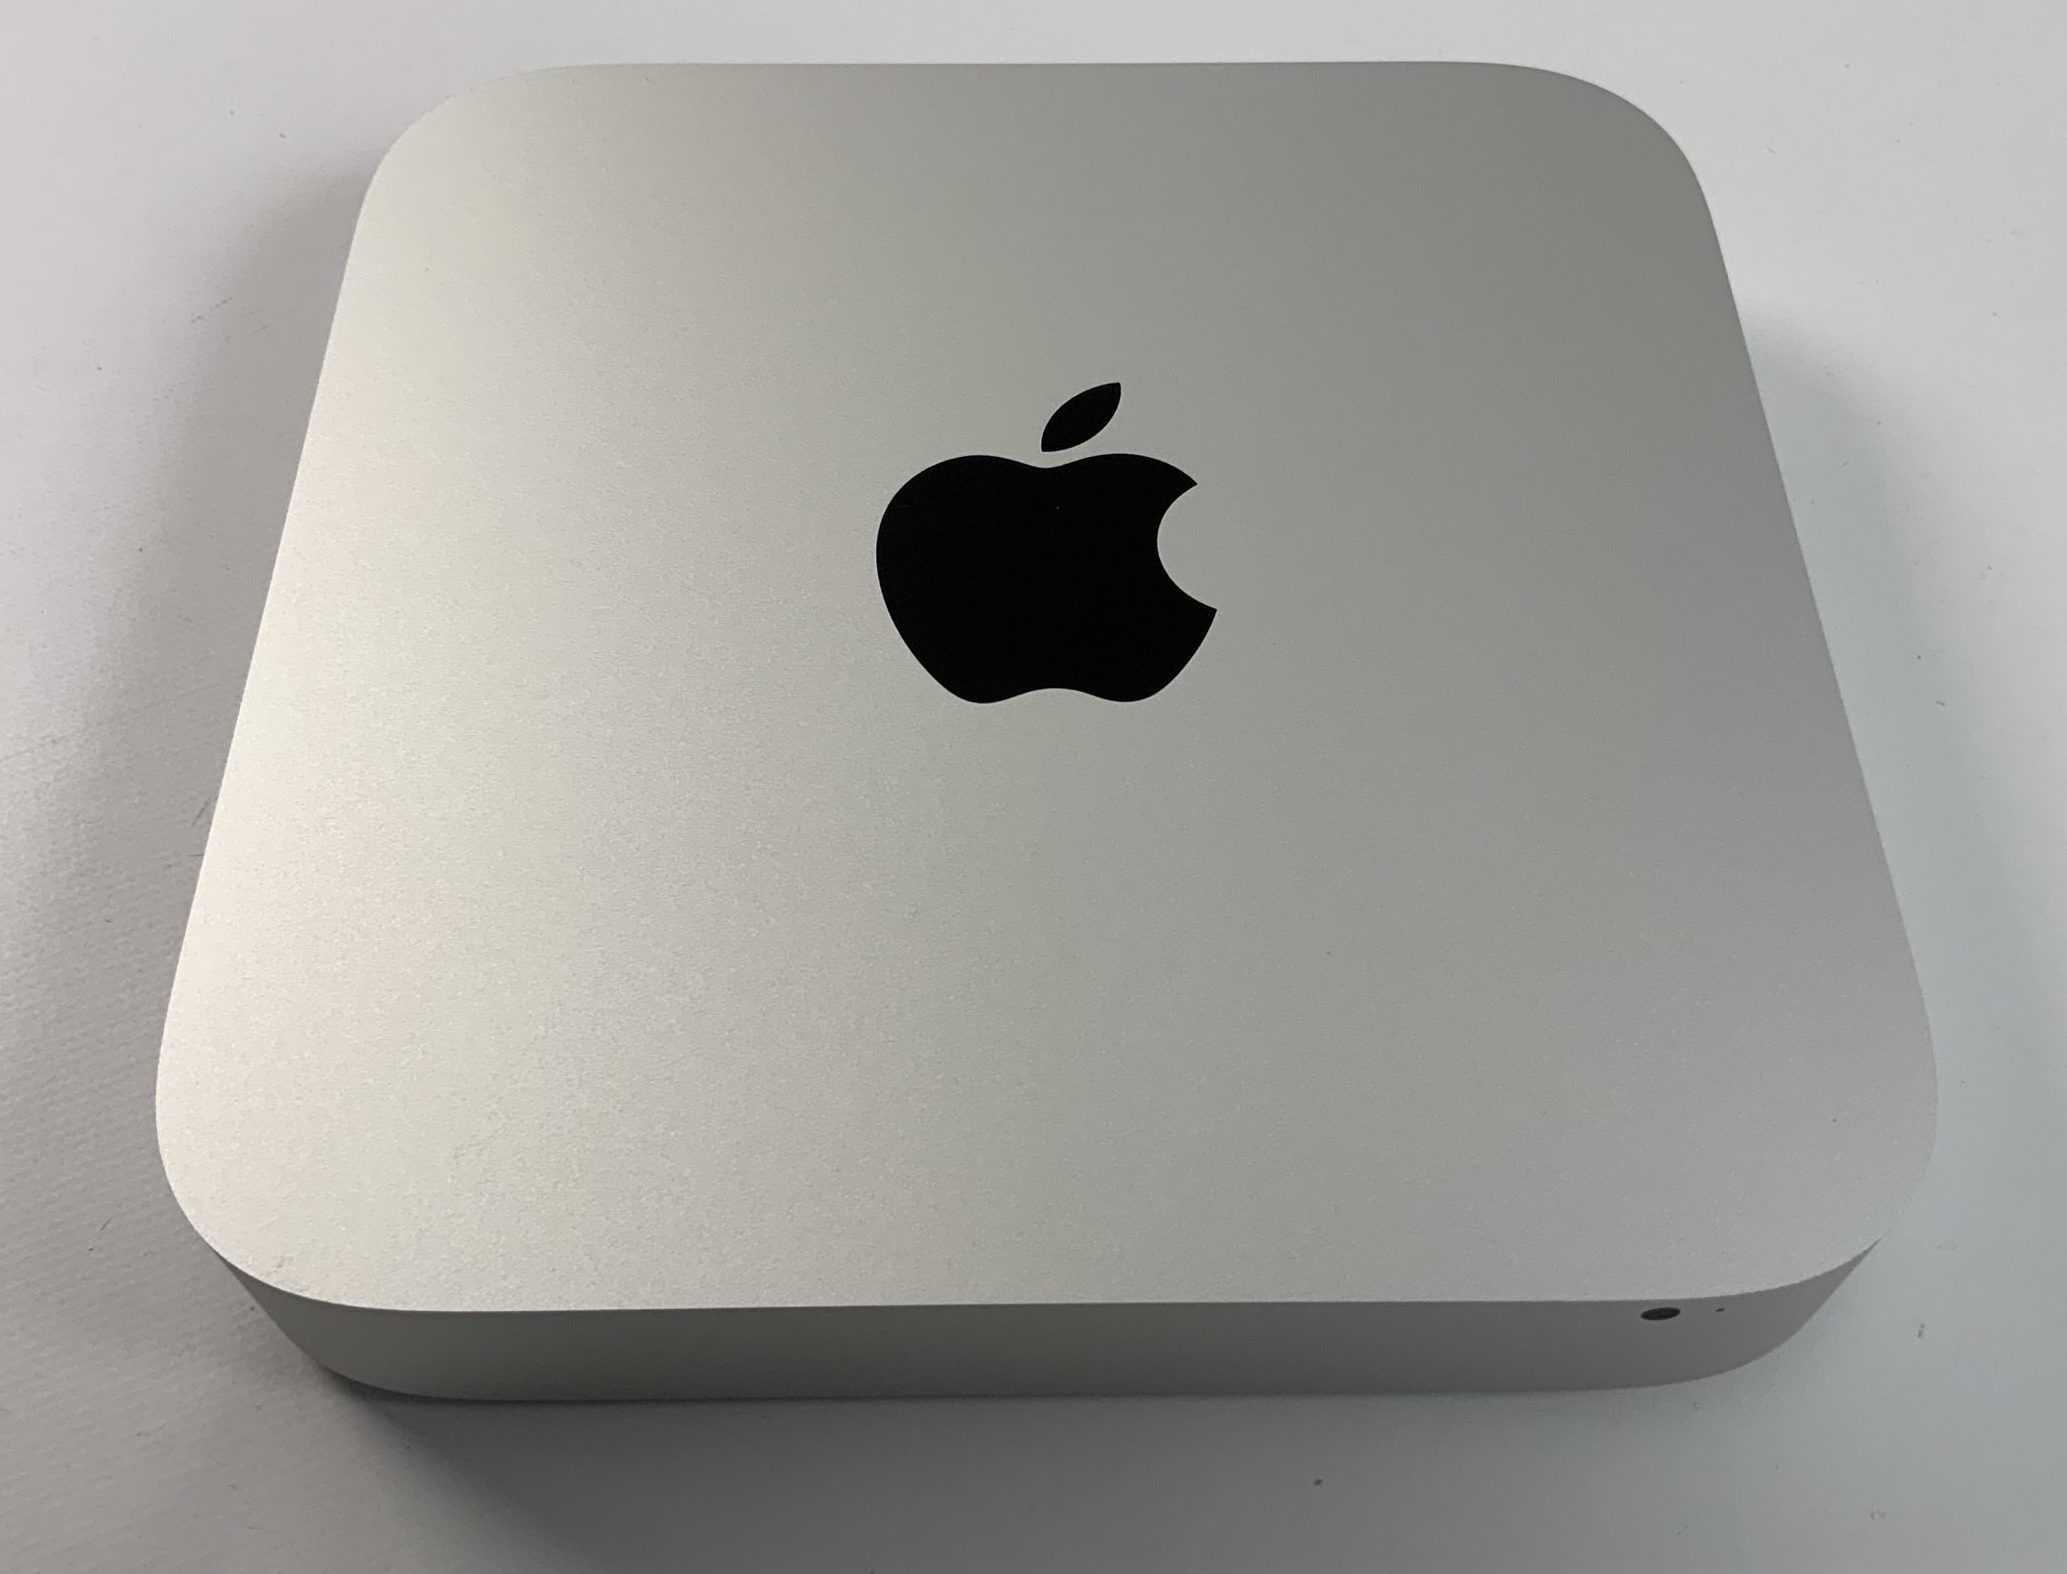 Mac Mini Late 2014 (Intel Core i5 1.4 GHz 4 GB RAM 500 GB HDD), Intel Core i5 1.4 GHz, 4 GB RAM, 500 GB HDD, Kuva 1